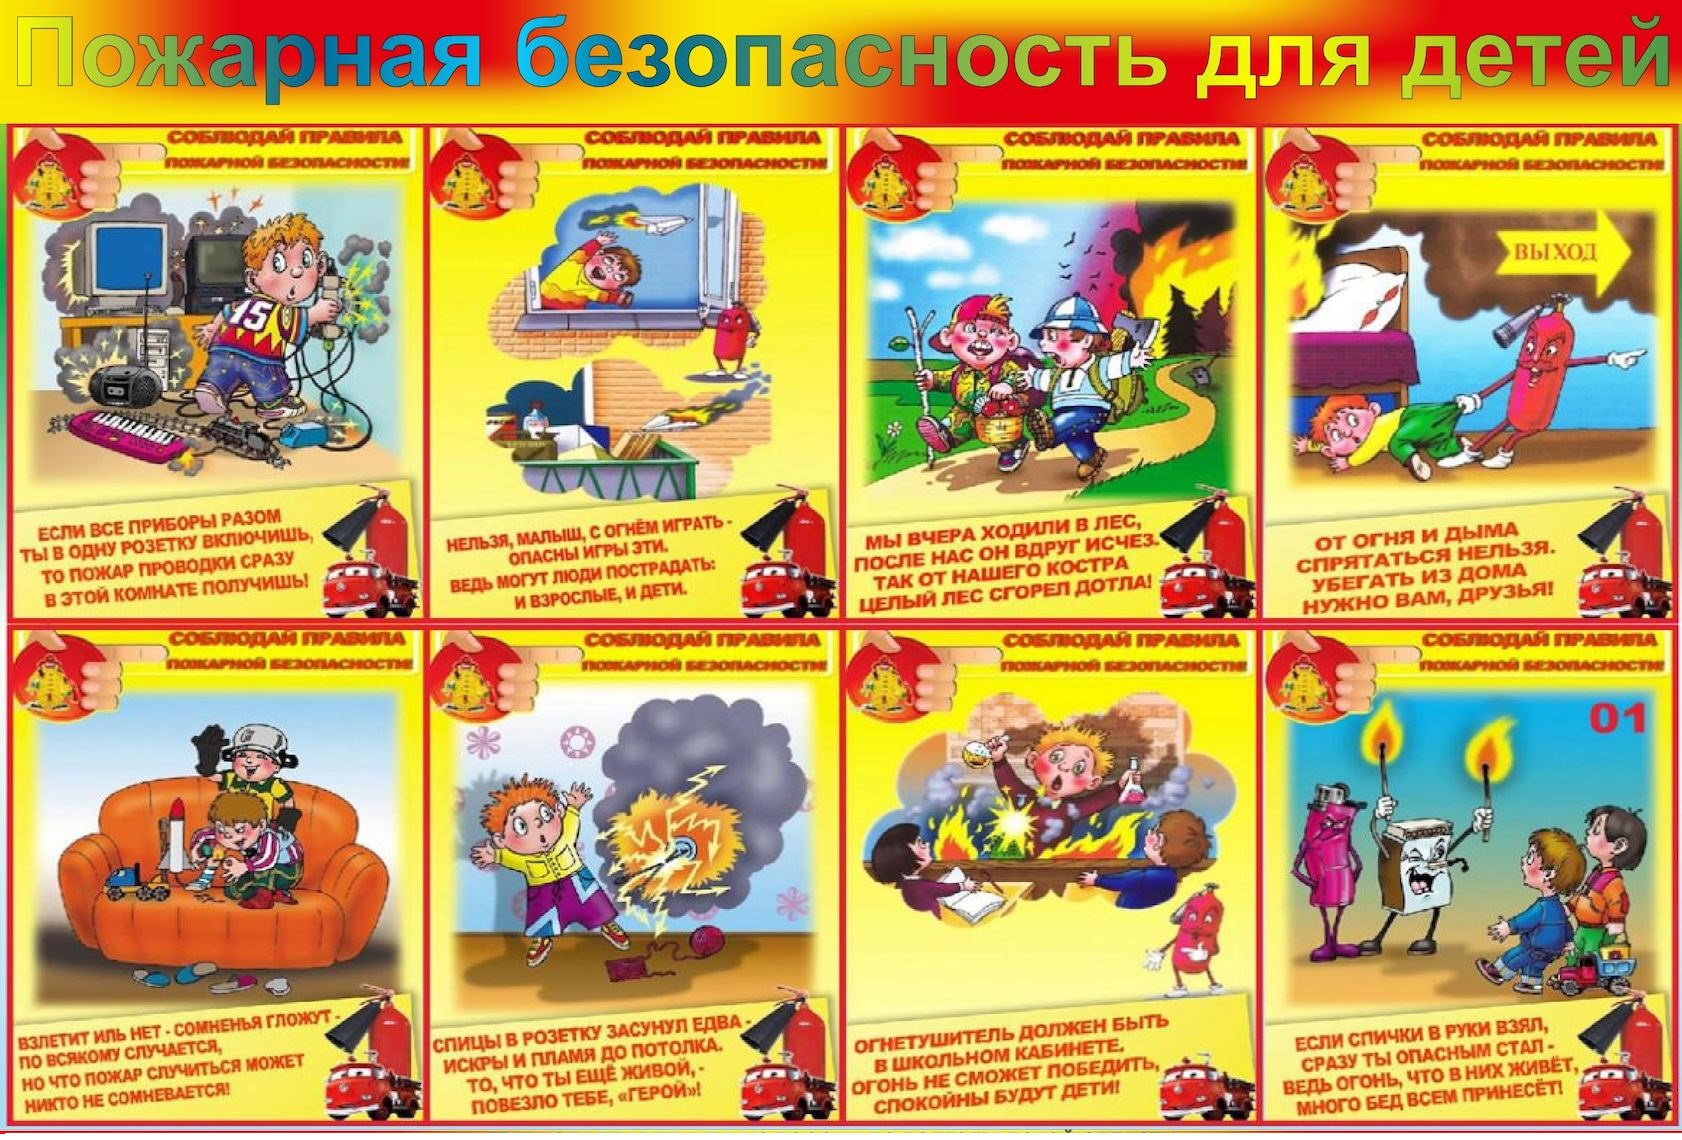 Сценарий пожарные в детском саду. Памятка правил пожарной безопасности для детей. ТБ по пожарной безопасности для детей. Правила пожарной безопасноят.